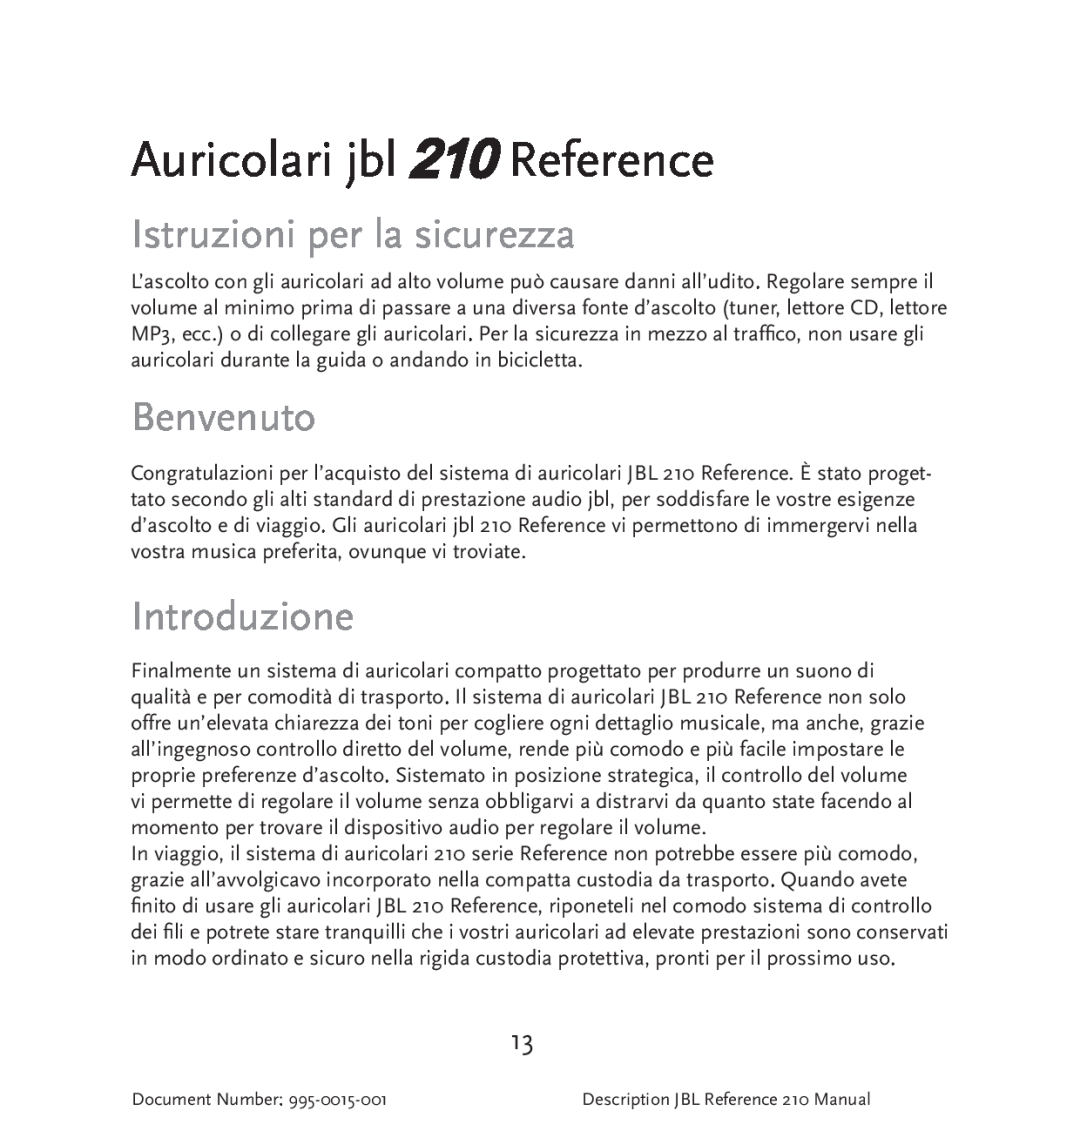 JBL manual Auricolari jbl 210 Reference, Istruzioni per la sicurezza, Benvenuto, Introduzione 